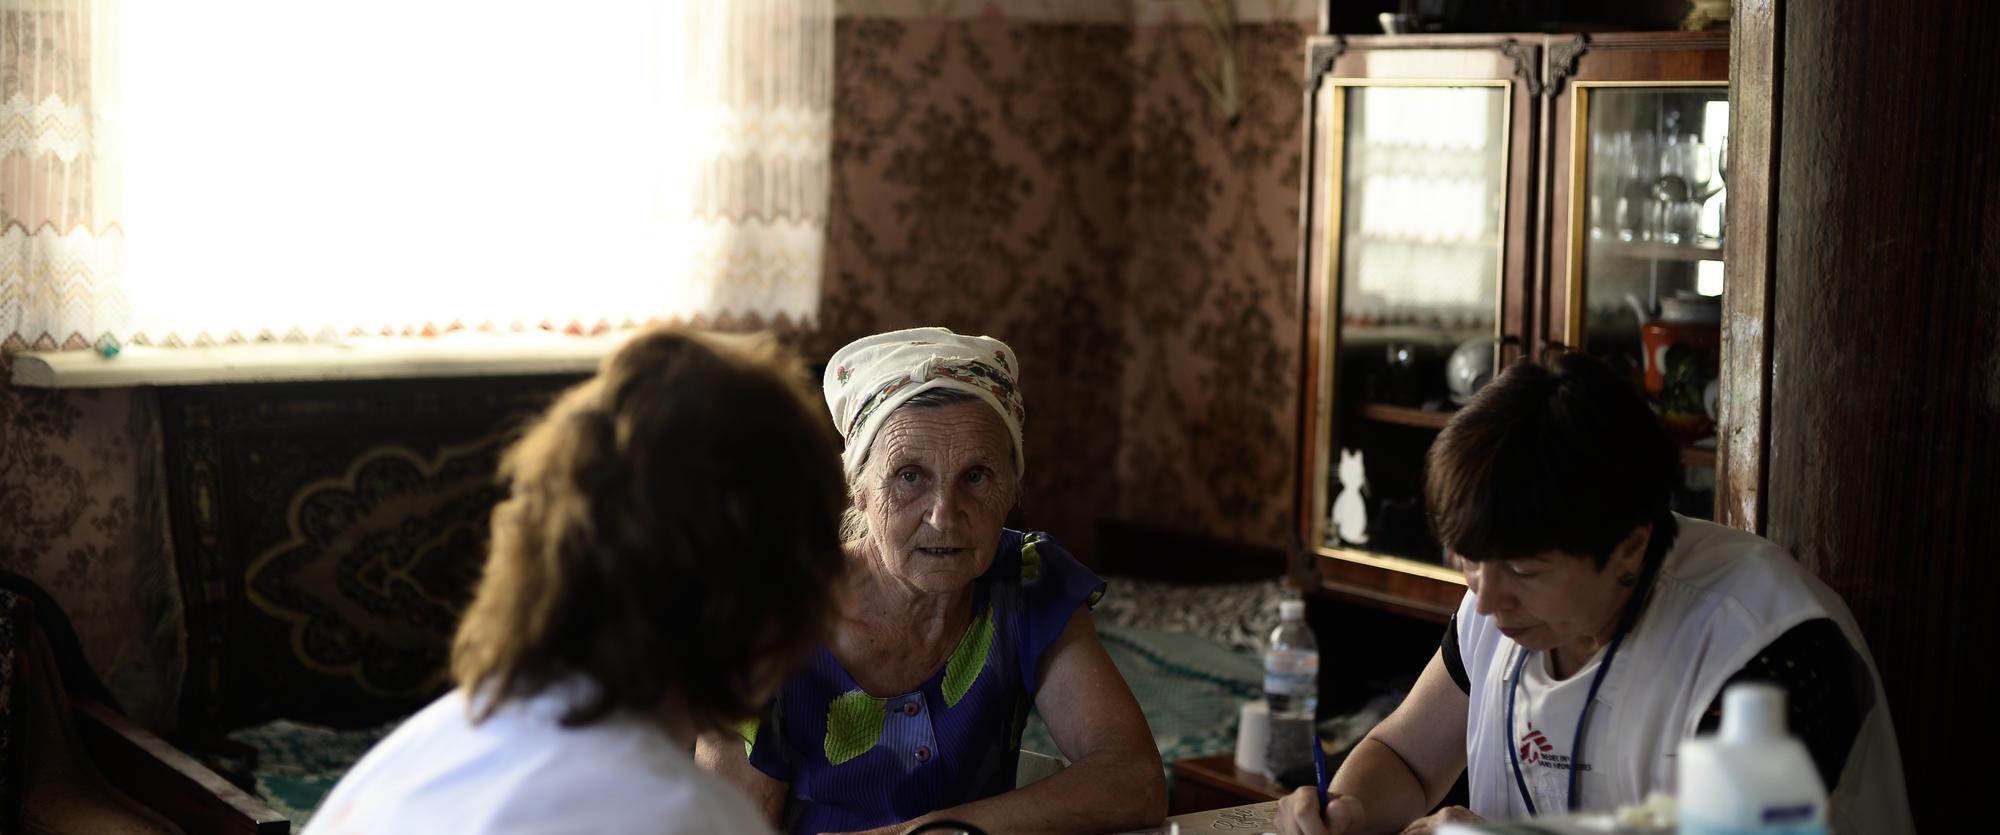 Providing care in Donetsk area